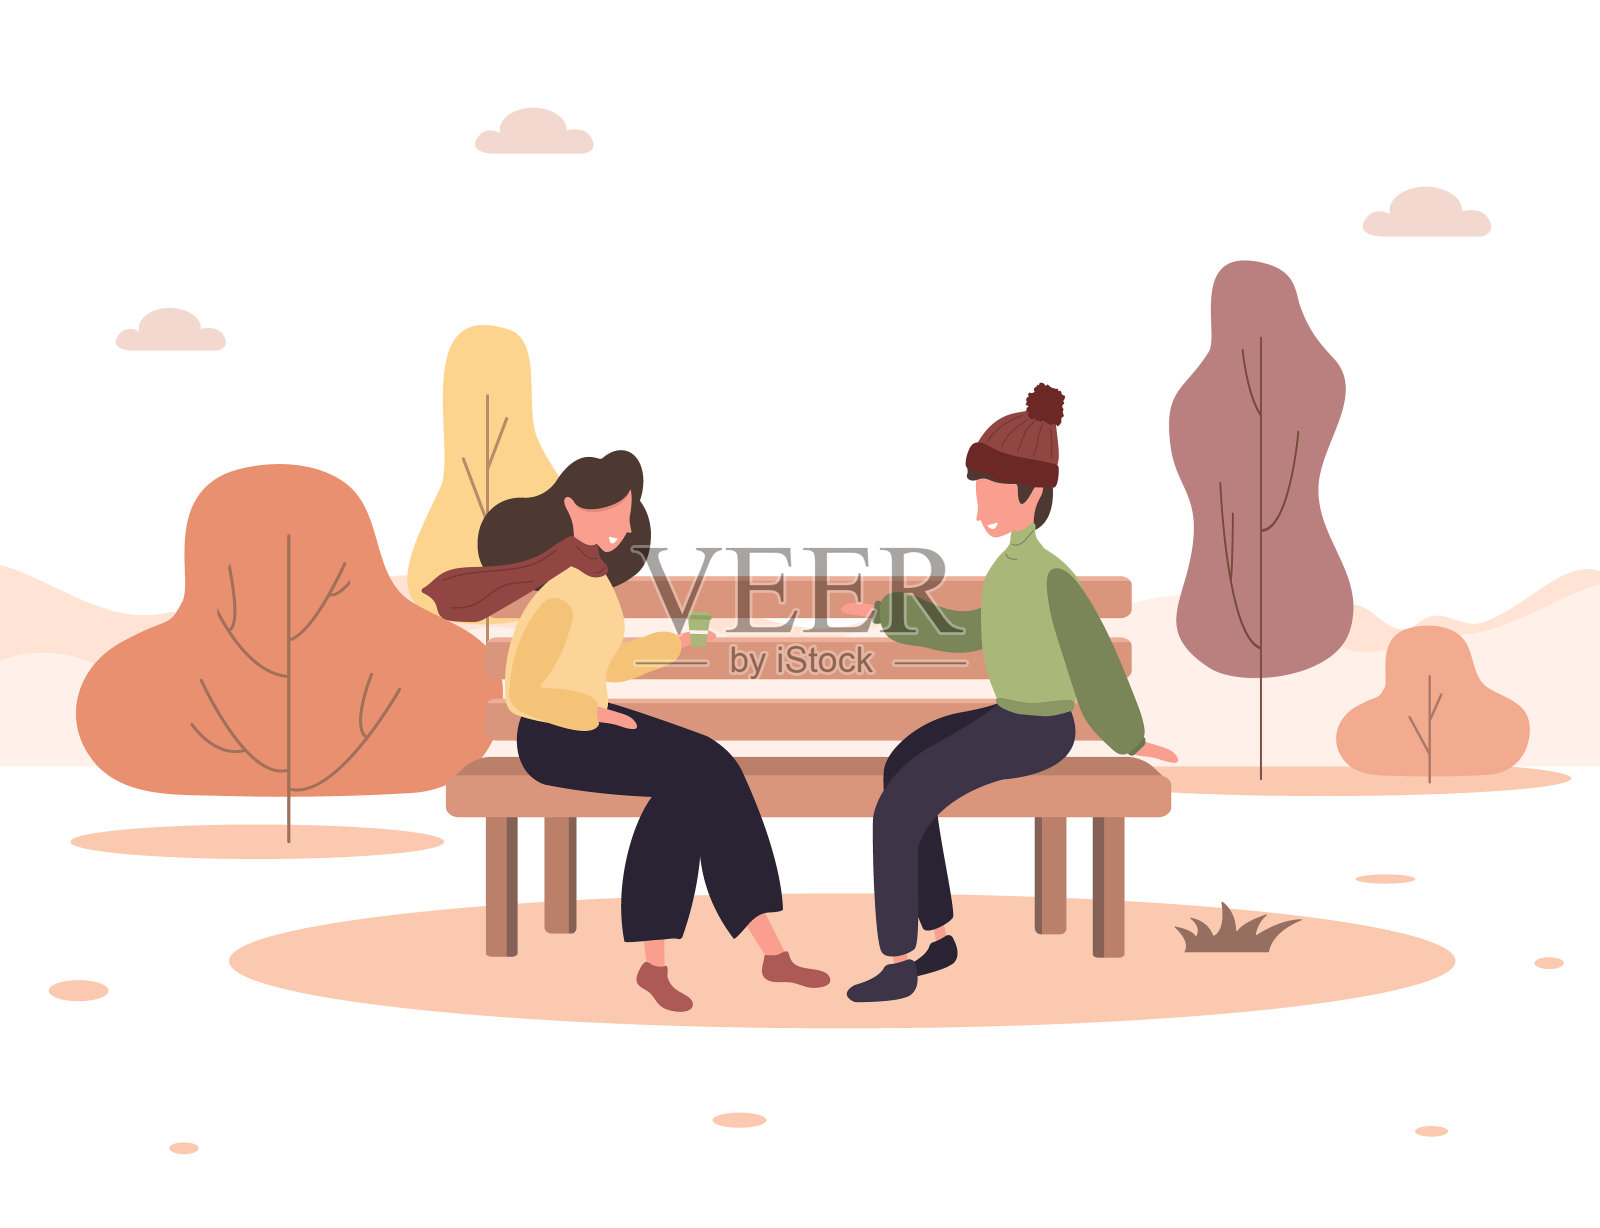 男人和女人在公园约会。一对浪漫的情侣坐在长椅上微笑着。两个恋人在一起度过时光。快乐的秋天背景。矢量插图在平面卡通风格。插画图片素材